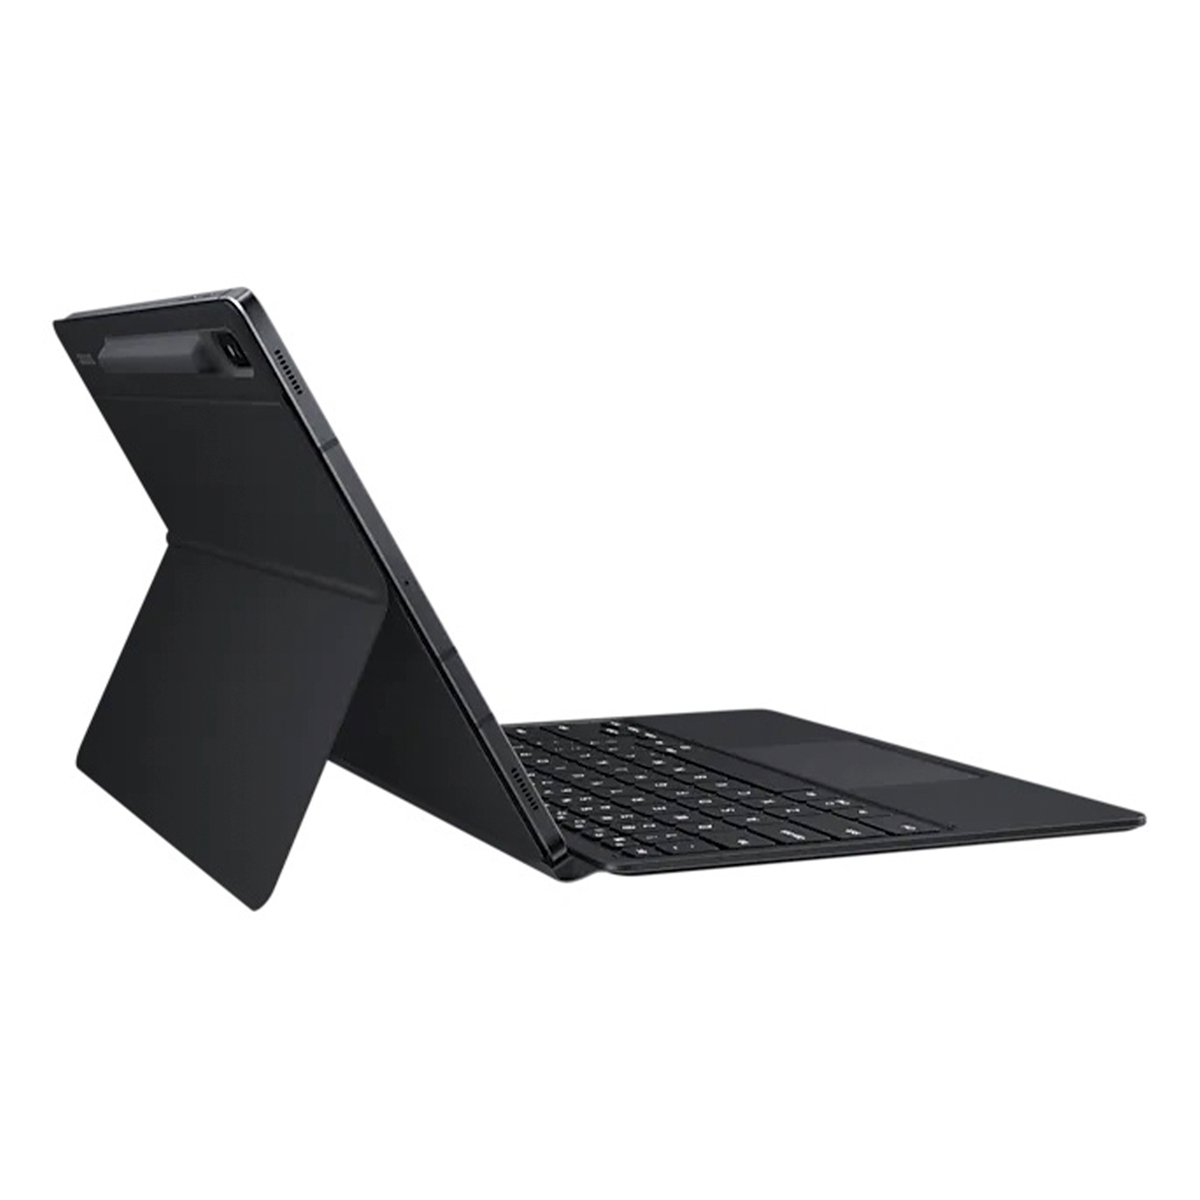 Samsung S7+ Keyboard Cover EF-DT970UBEGAE Black